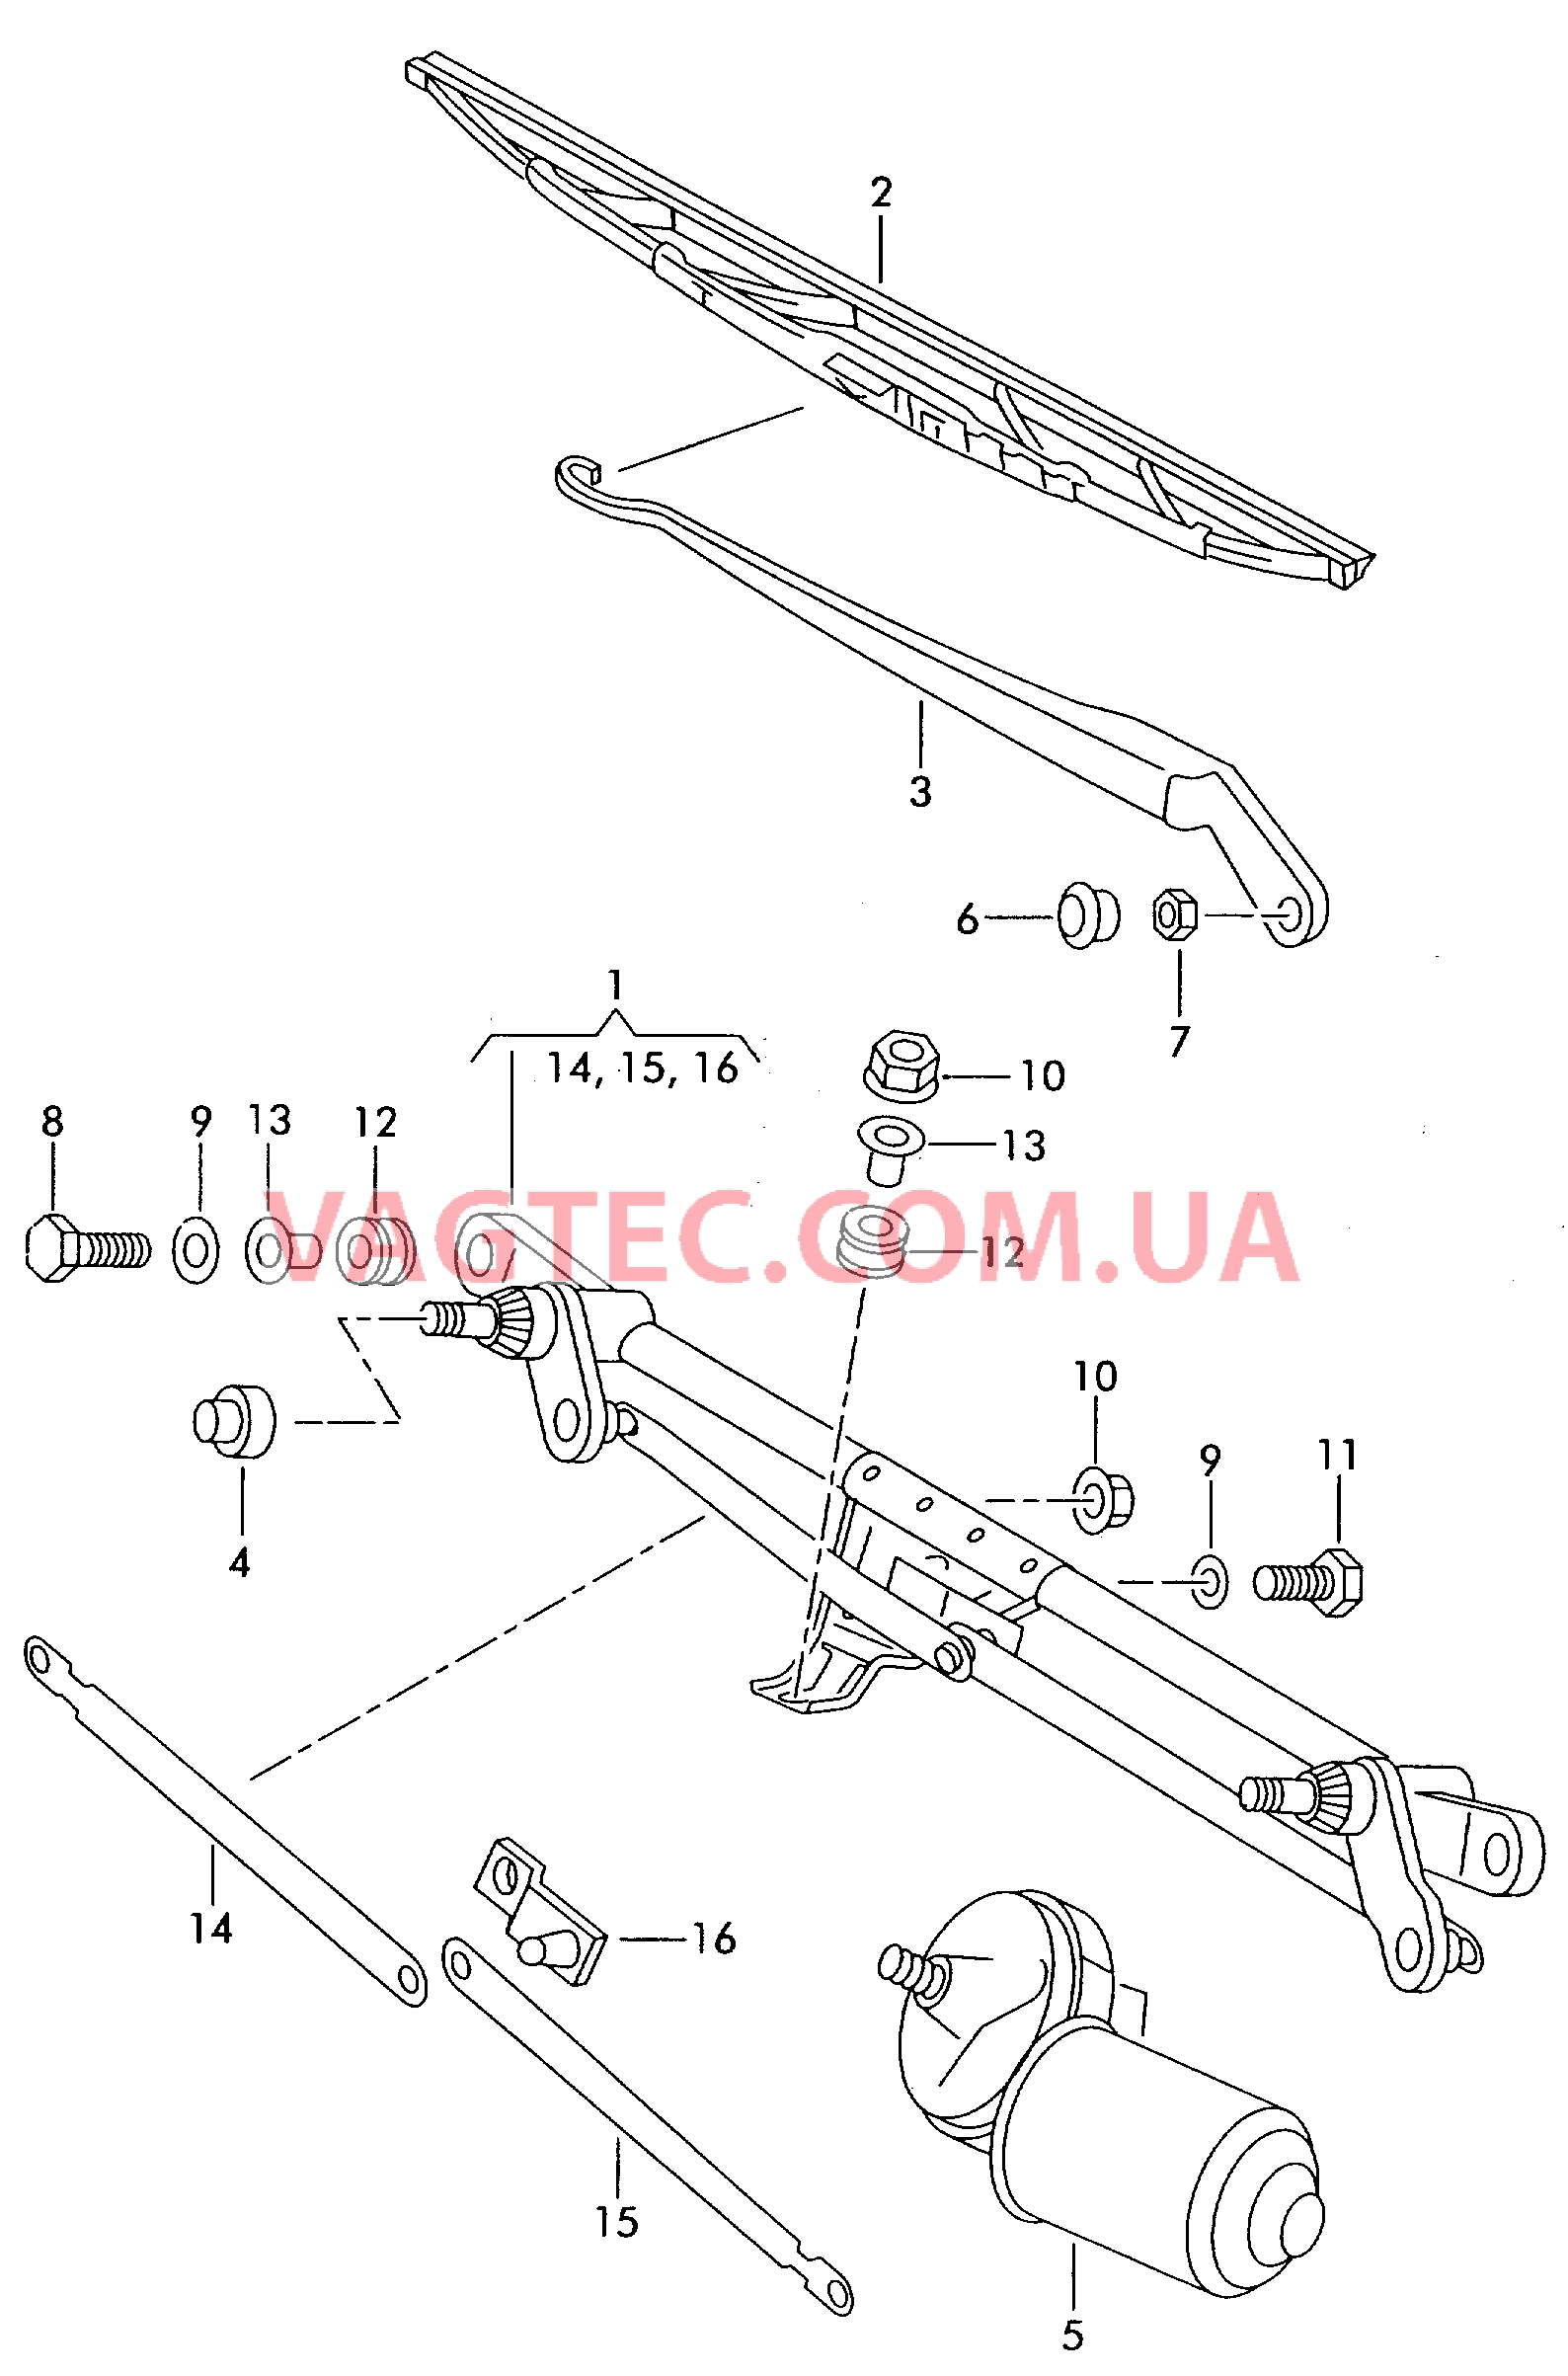 Привод стеклоочистителей Электродвигатель стеклоочист. Cтеклоочиститель  для SEAT Ibiza 2000